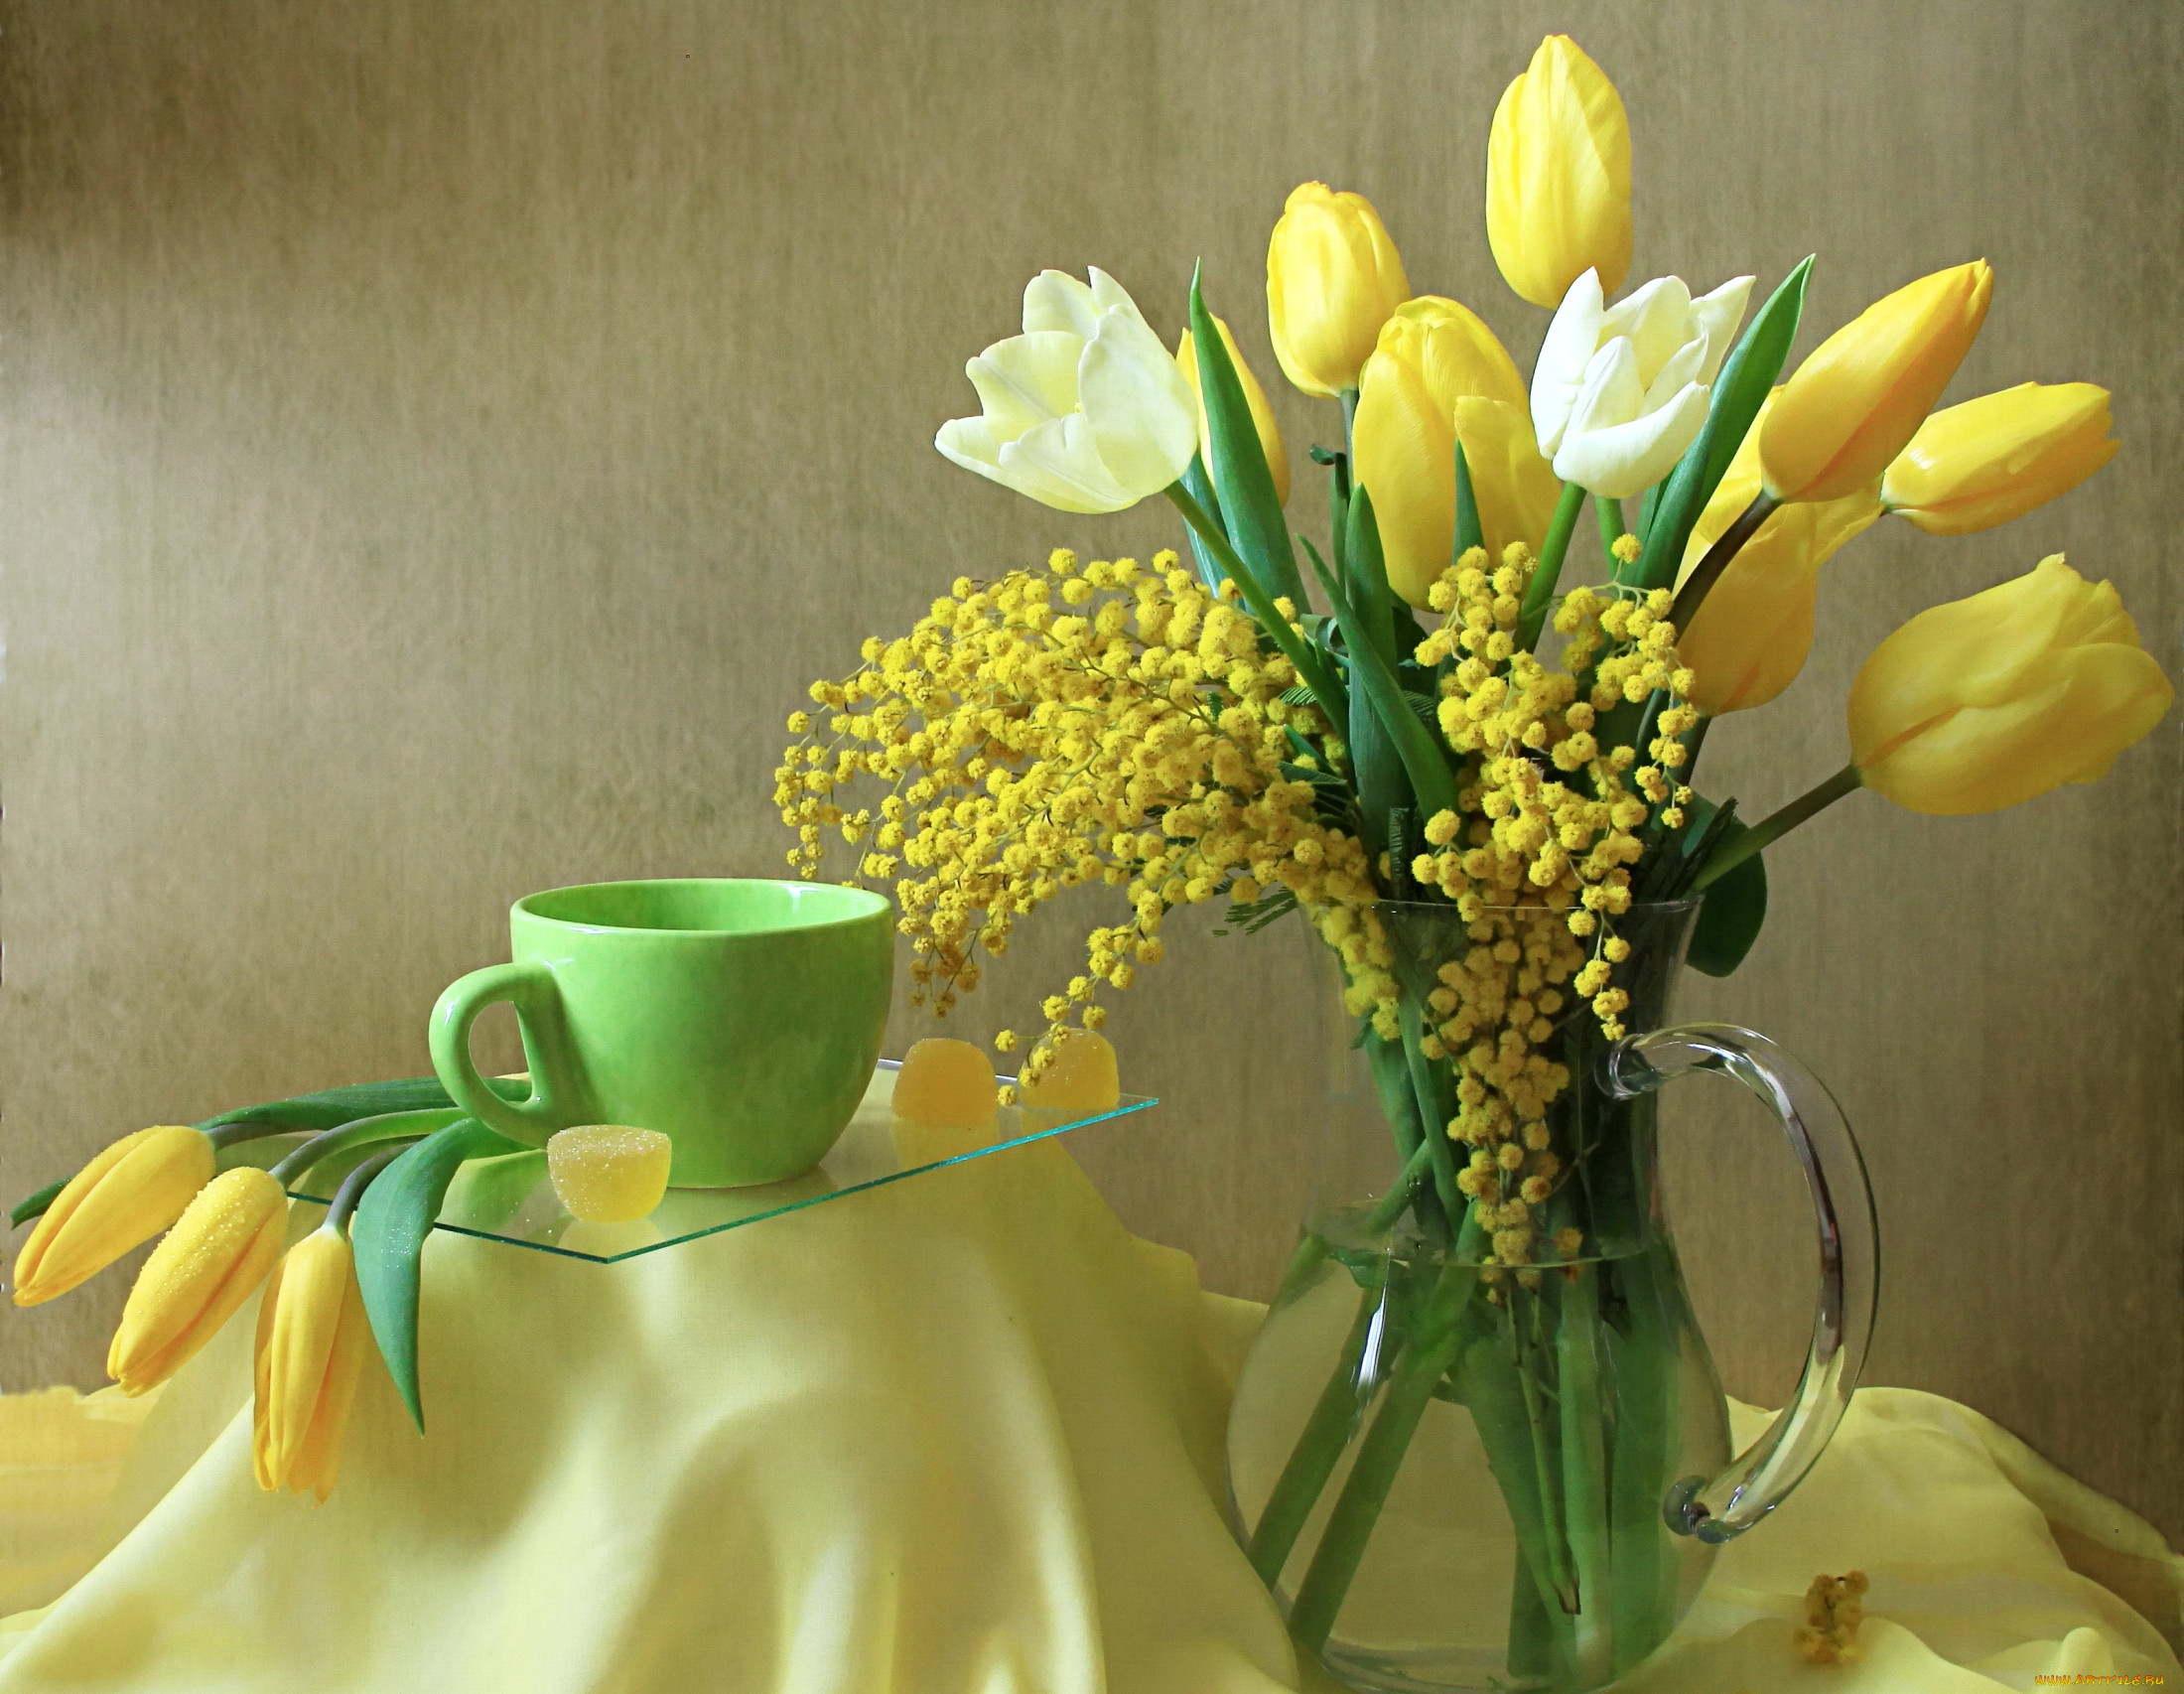 Март понедельник пожелания. Мимоза и тюльпаны. Весенний букет с мимозой и тюльпанами. Натюрморт с весенними цветами. Весенний букет с мимозой.